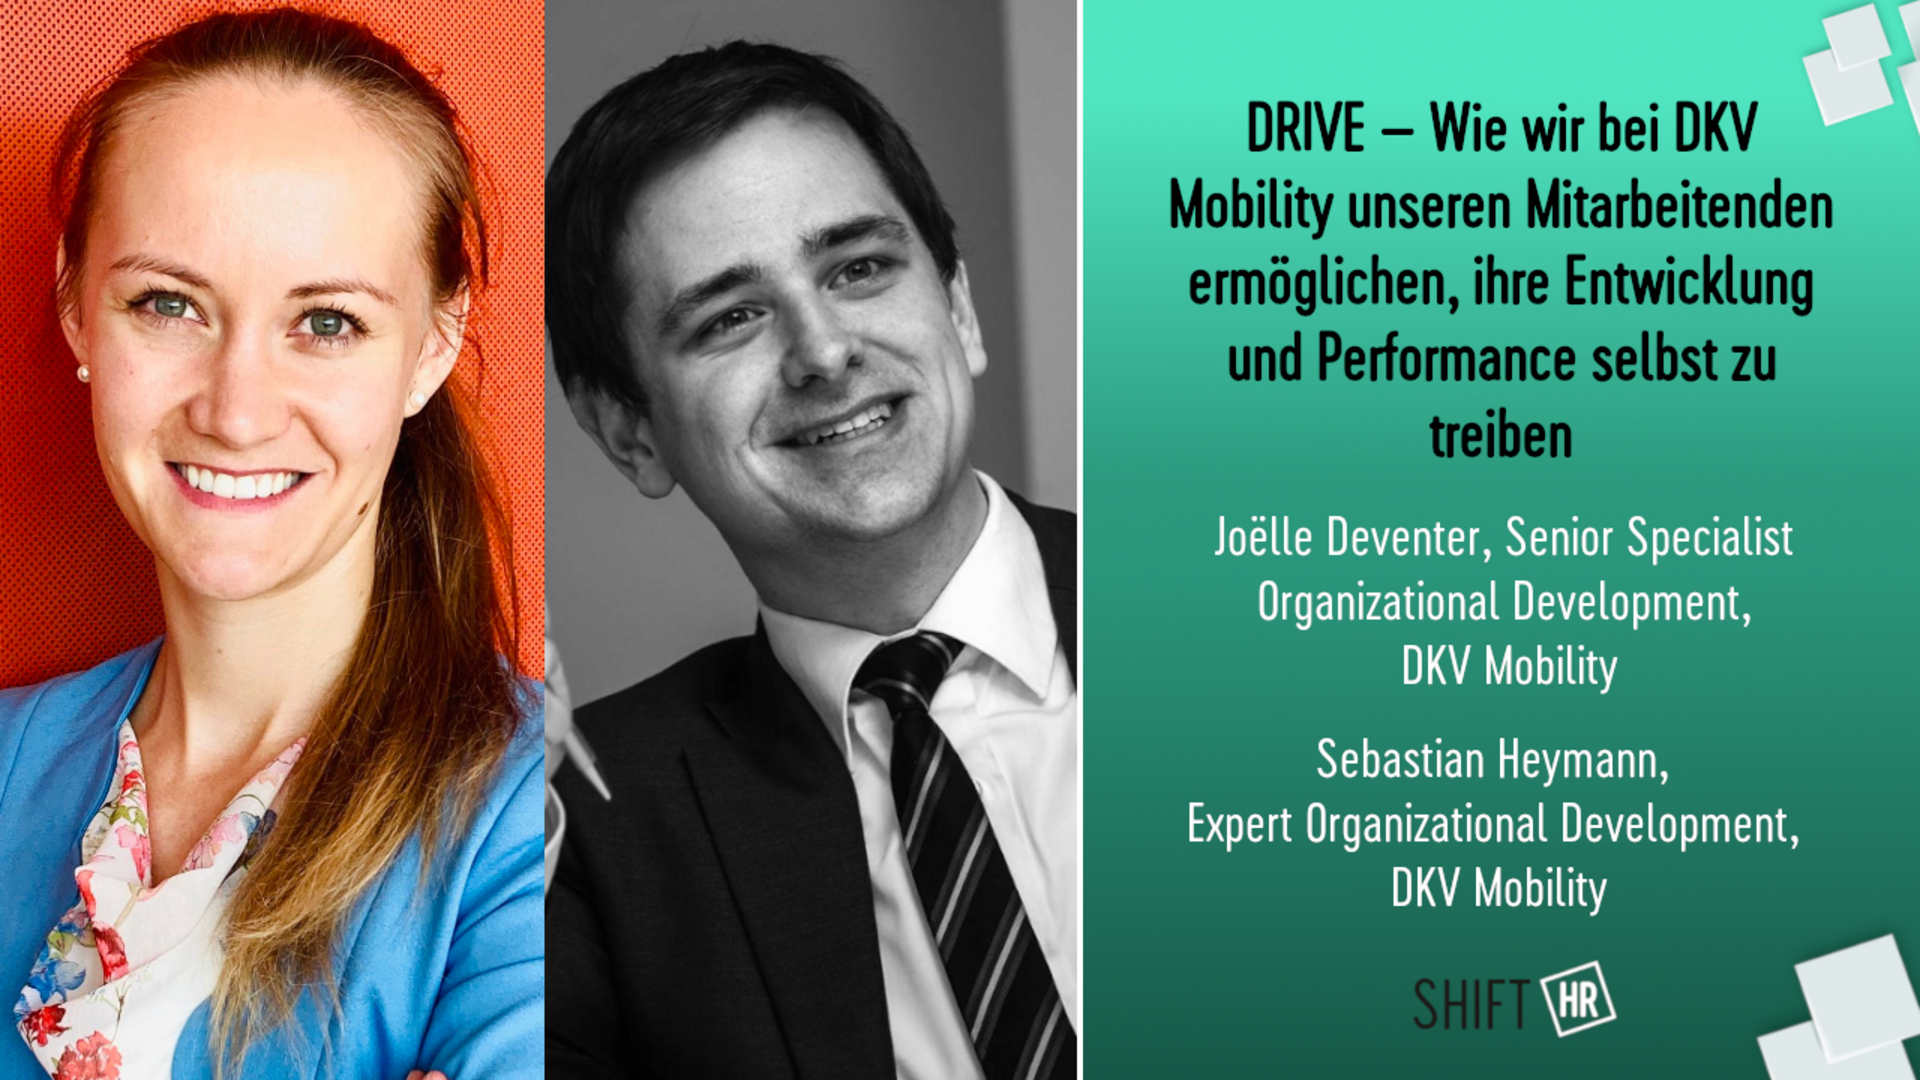 DRIVE - Wie wir bei DKV Mobility unseren Mitarbeitenden ermöglichen, ihre Entwicklung und Performance selbst zu treiben